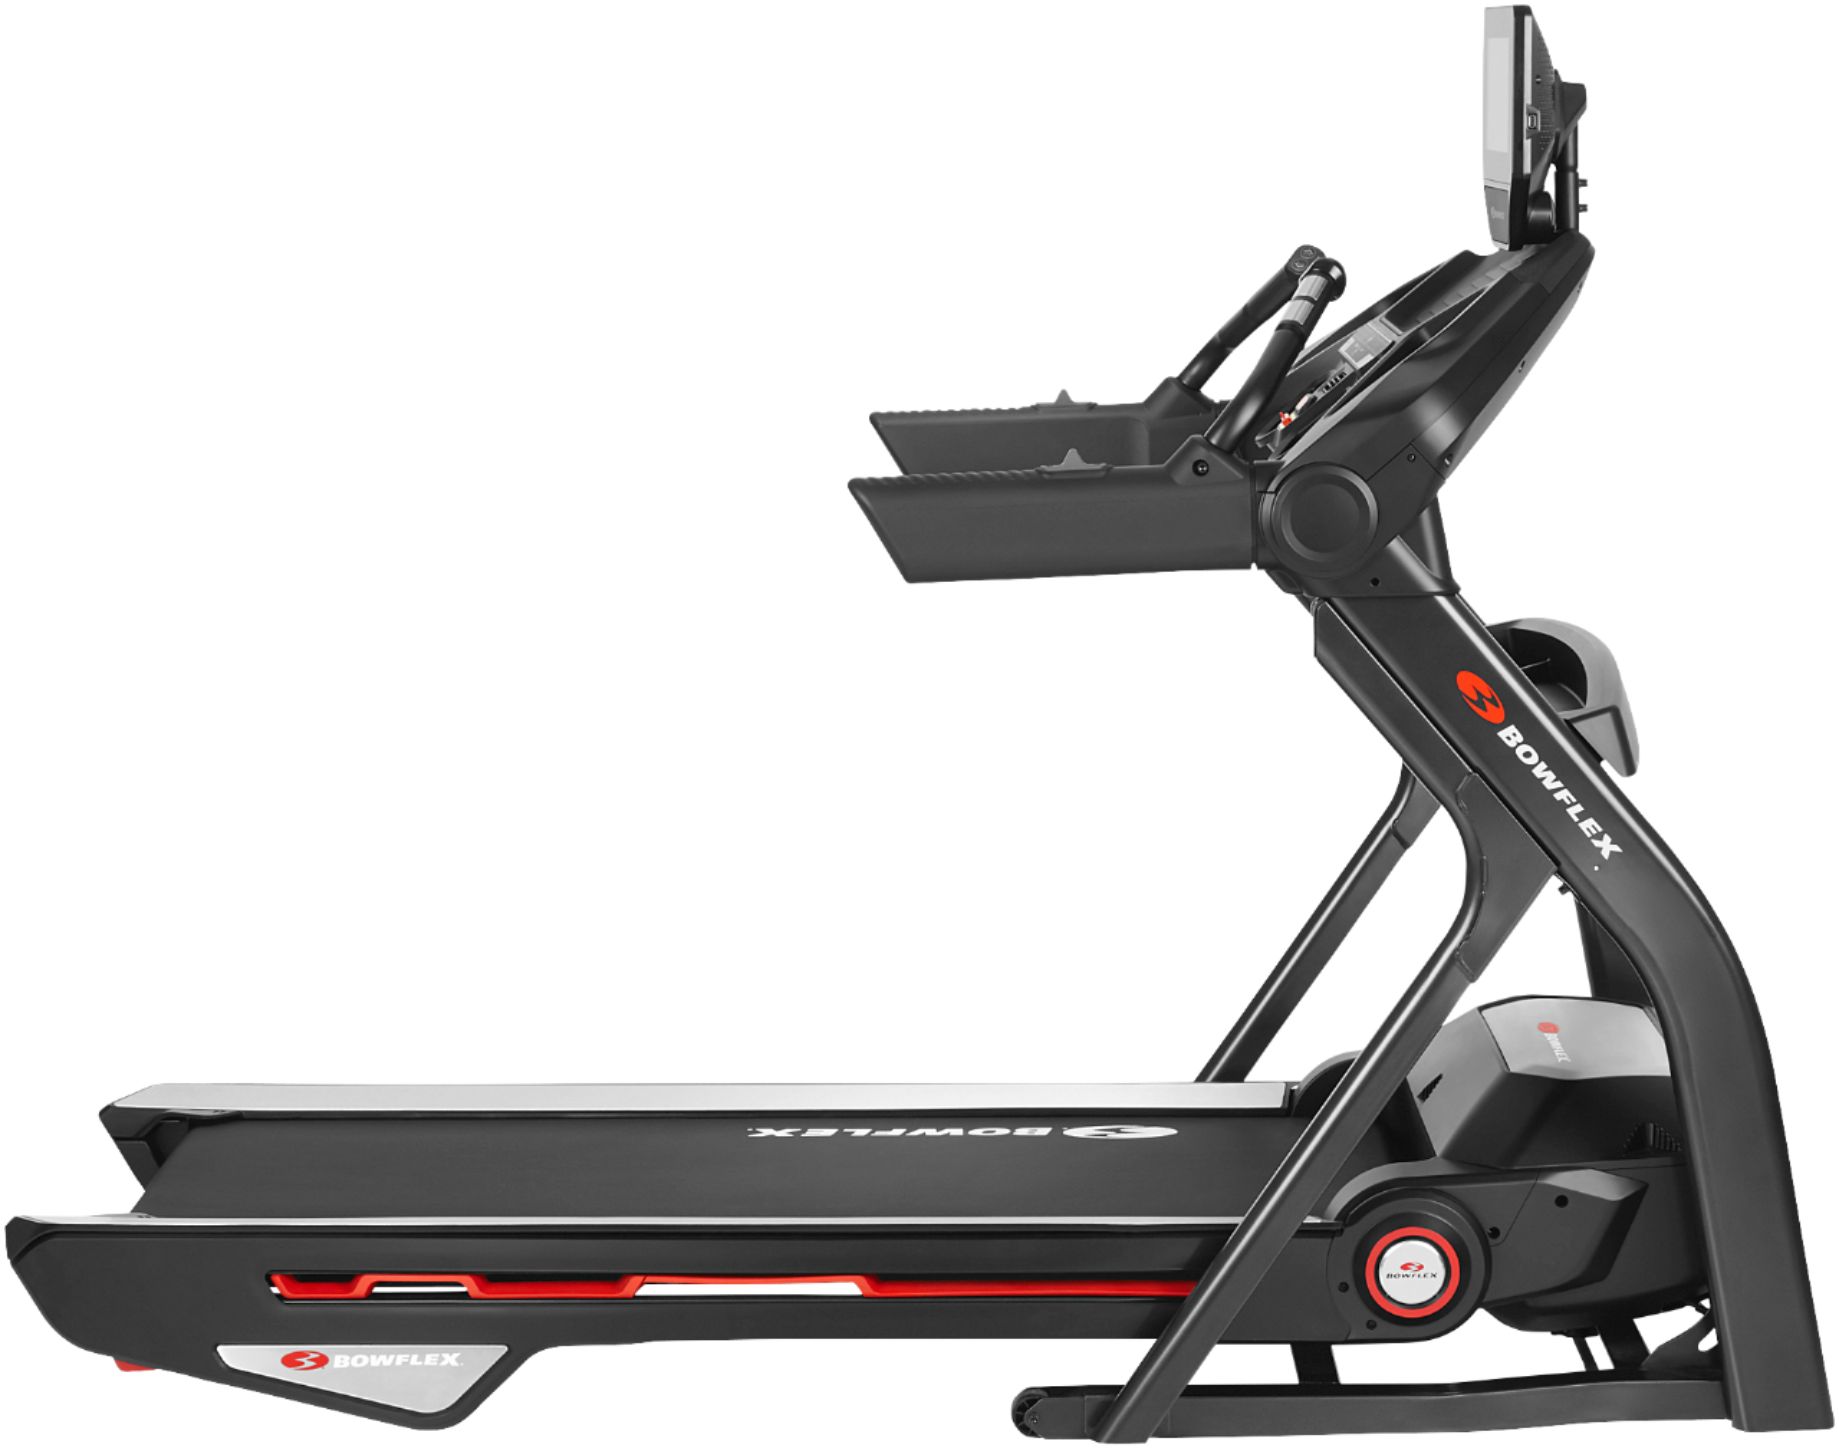 Bowflex Treadmill 10 – Black – Just $1699.99 at Best Buy